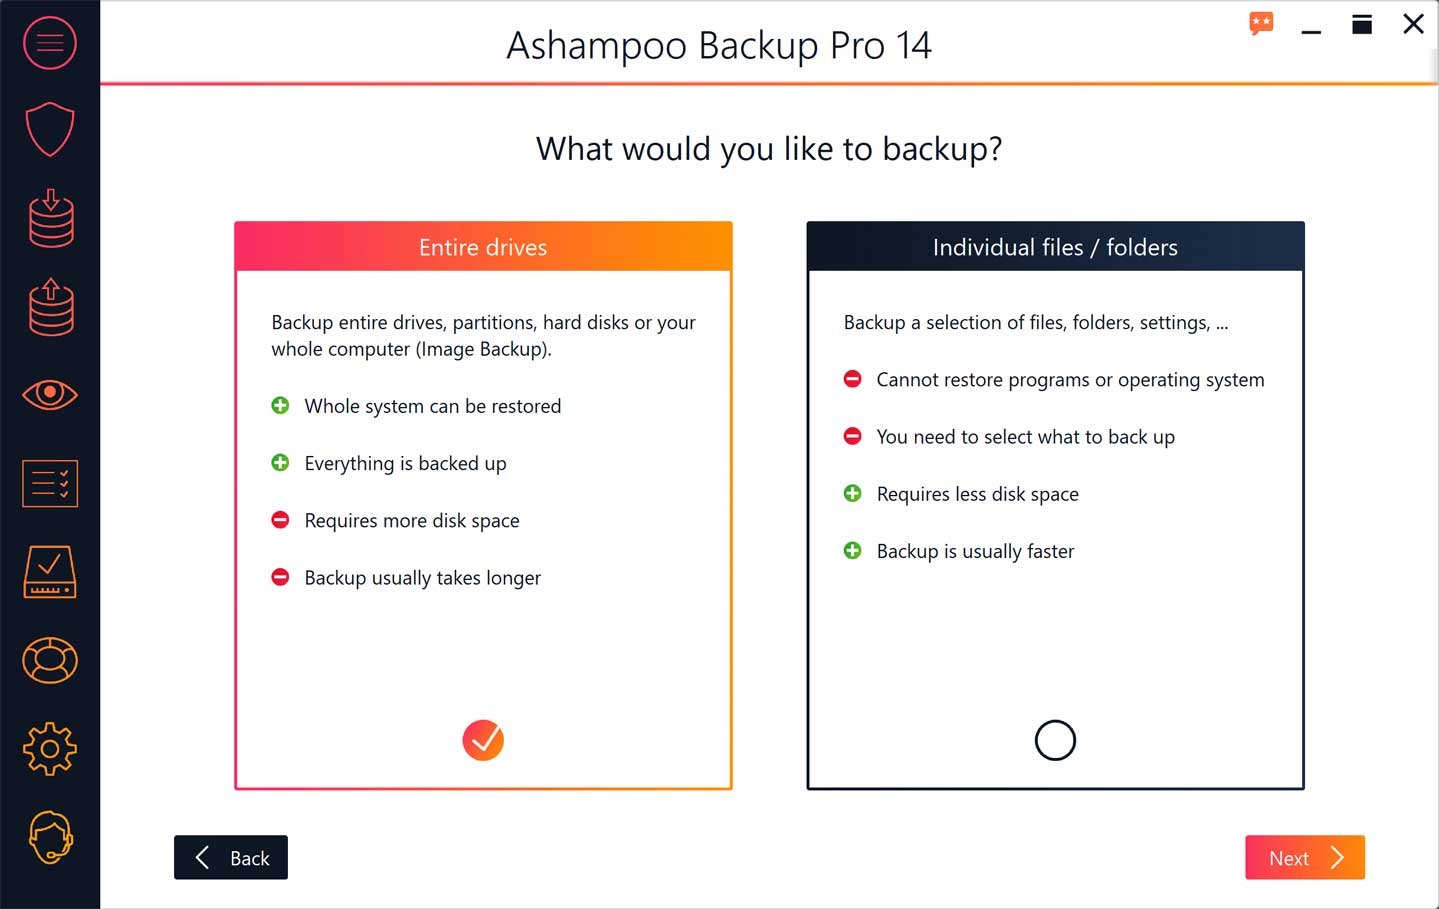 Bạn thoải mái lựa chọn cách Ashampoo Backup Pro 14 sao lưu dữ liệu